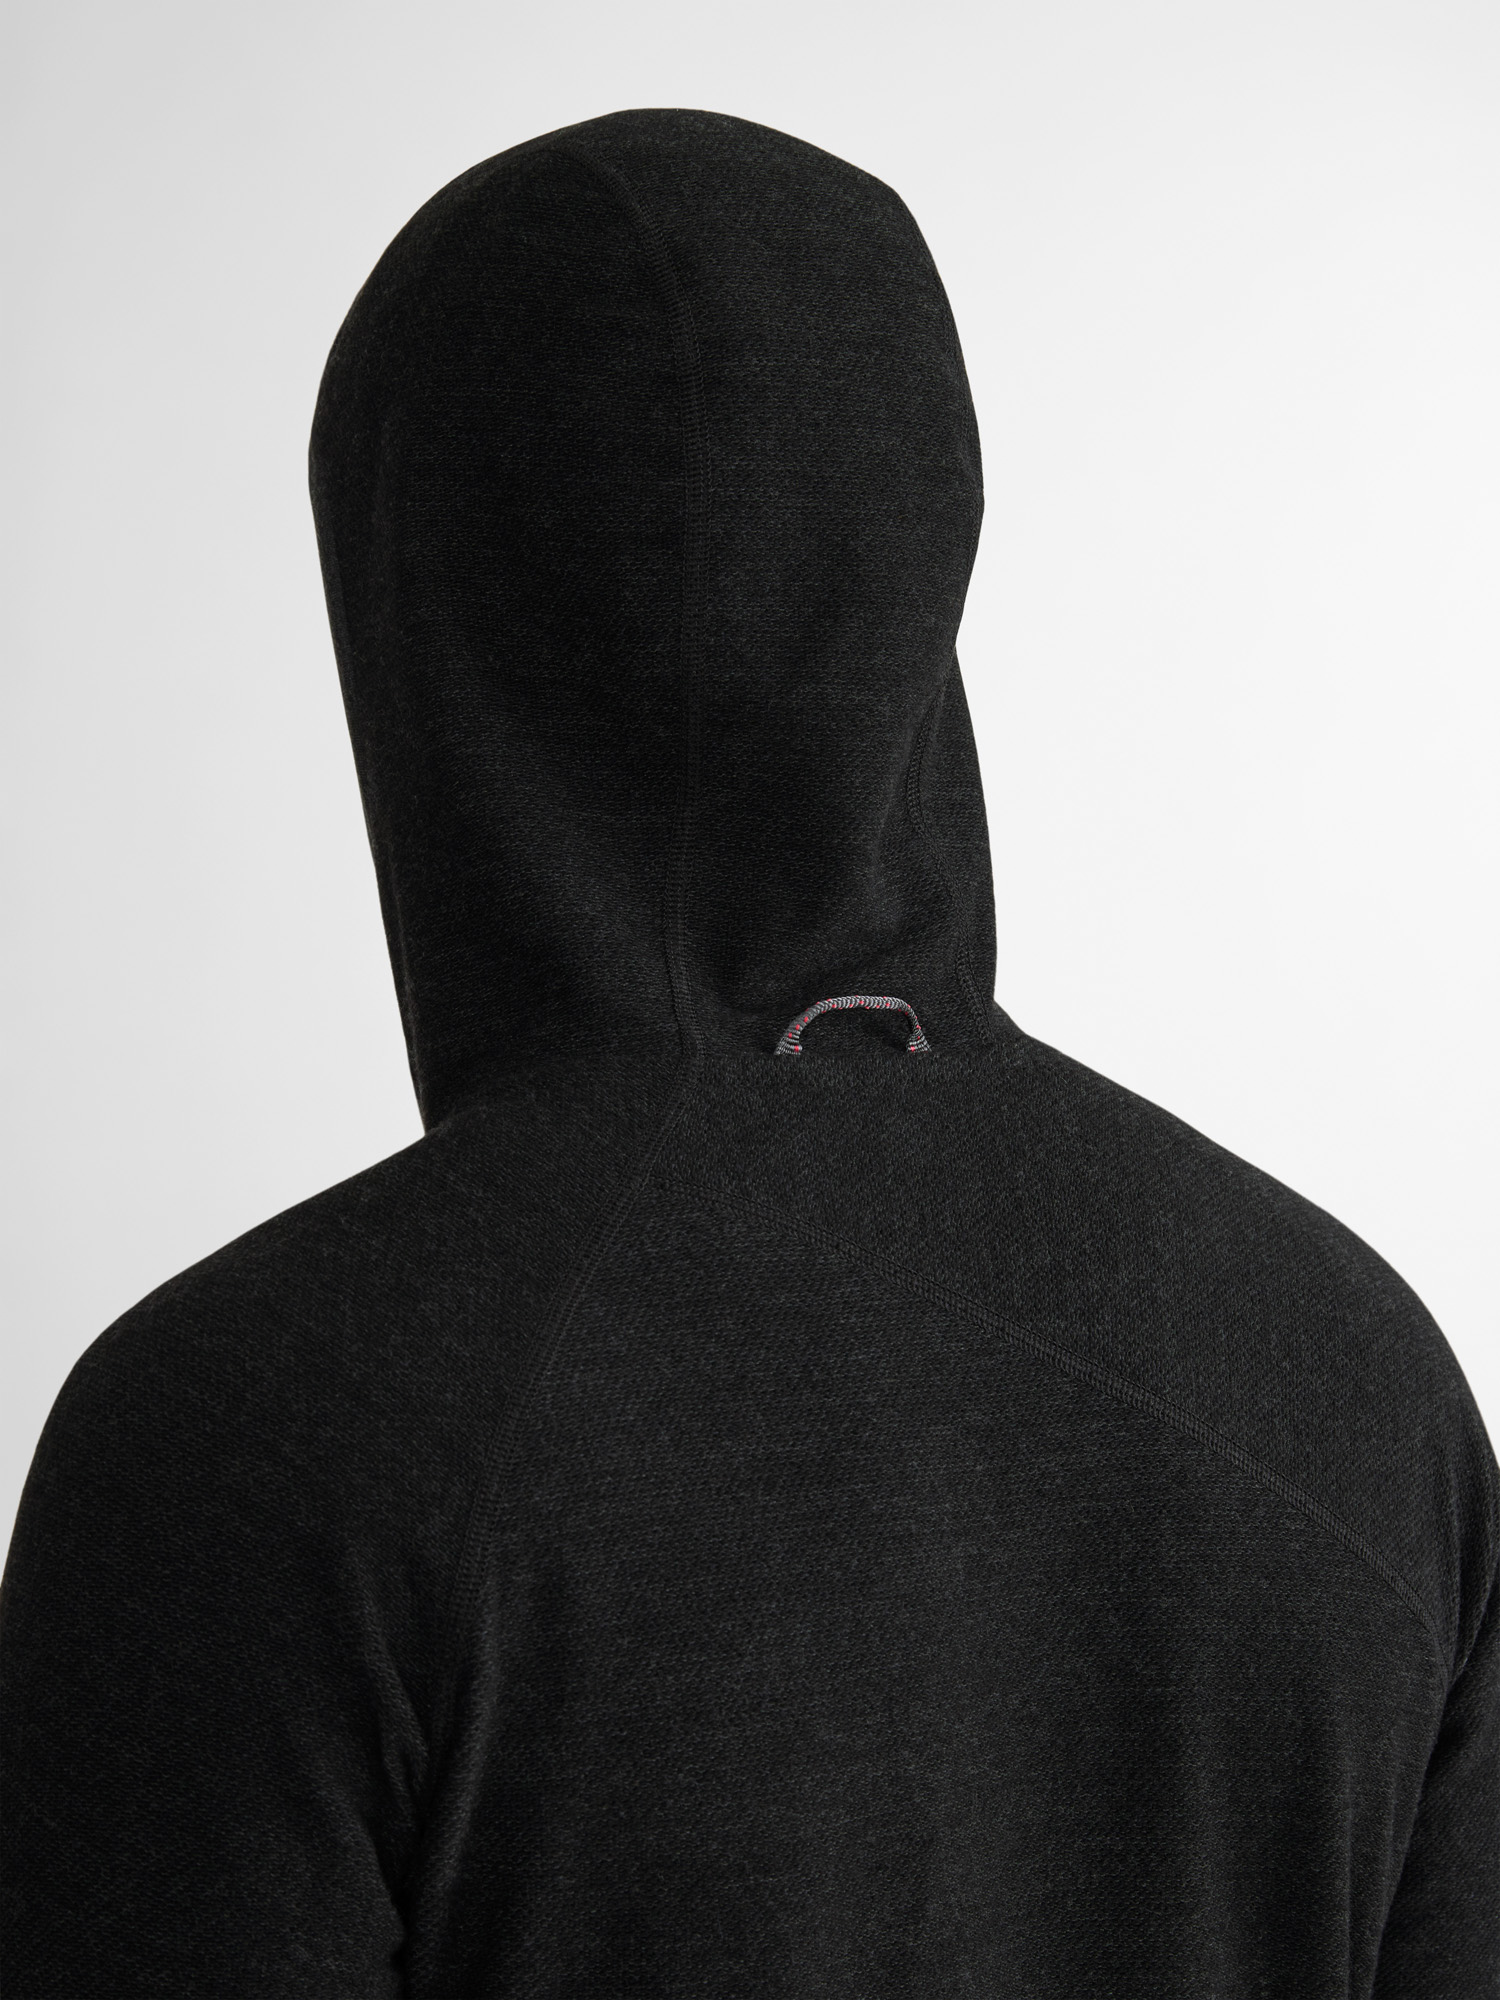 10038 - Hödur Hooded Zip M's - Black